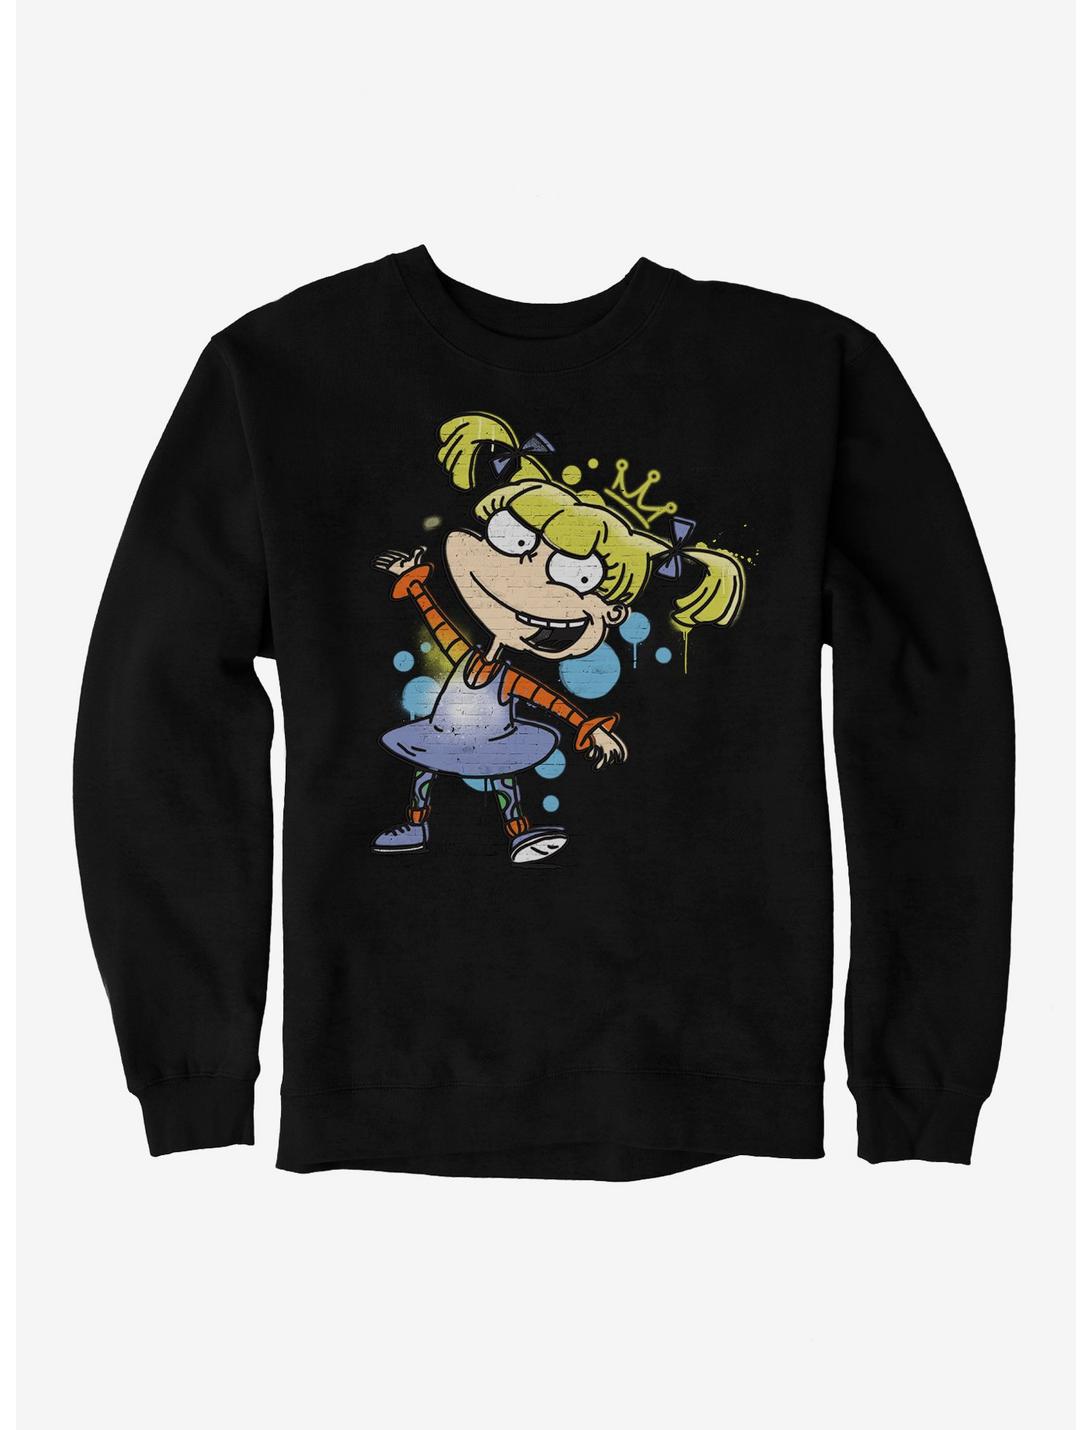 Rugrats Princess Angelica Sweatshirt, BLACK, hi-res